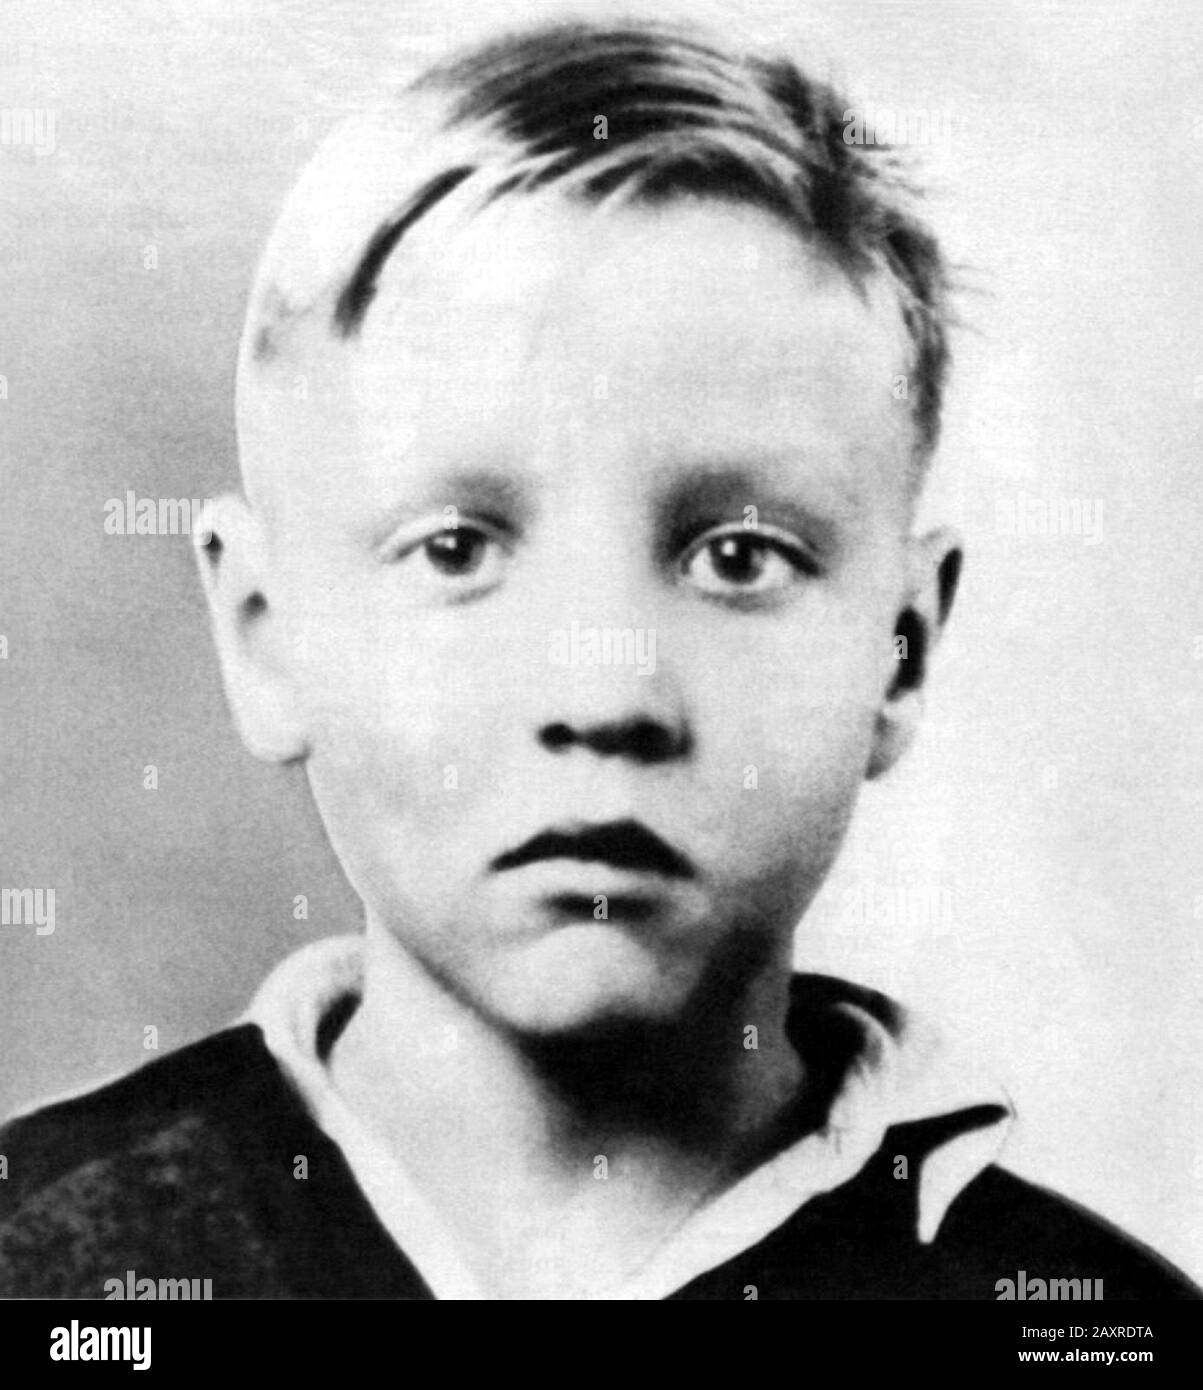 1945 Ca, Tupelo, USA: Der gefeiertste Rock'n Roll-Sänger ELVIS PRESLEY (* 1935; † 1977), als er ein kleiner Junge war. Unentzifizierter Fotograf. - MUSIK - MUSICA - ROCK - GESCHICHTE - FOTO STORICHE - als Kind - Kinder - Berühmtheiten Berühmtheit - celebrità personaggi famosi da bambini - Bambino - Kinder - infanzia - Kindheit -- ARCHIVIO GBB Stockfoto